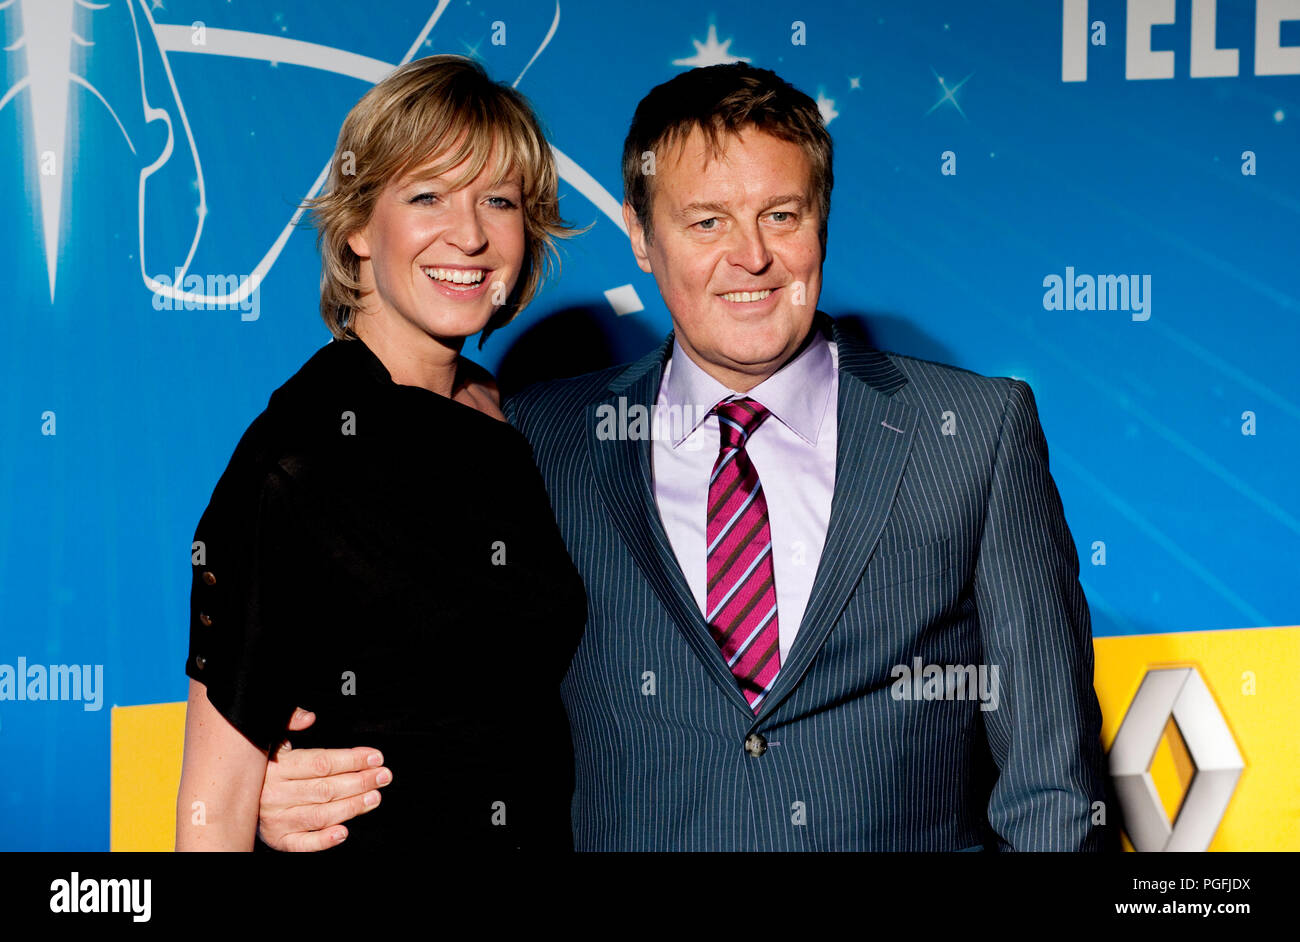 Frank Raes and his wife Cath Luyten at the Nacht van de Vlaamse Televisiesterren in Hasselt (Belgium, 06/03/2010) Stock Photo